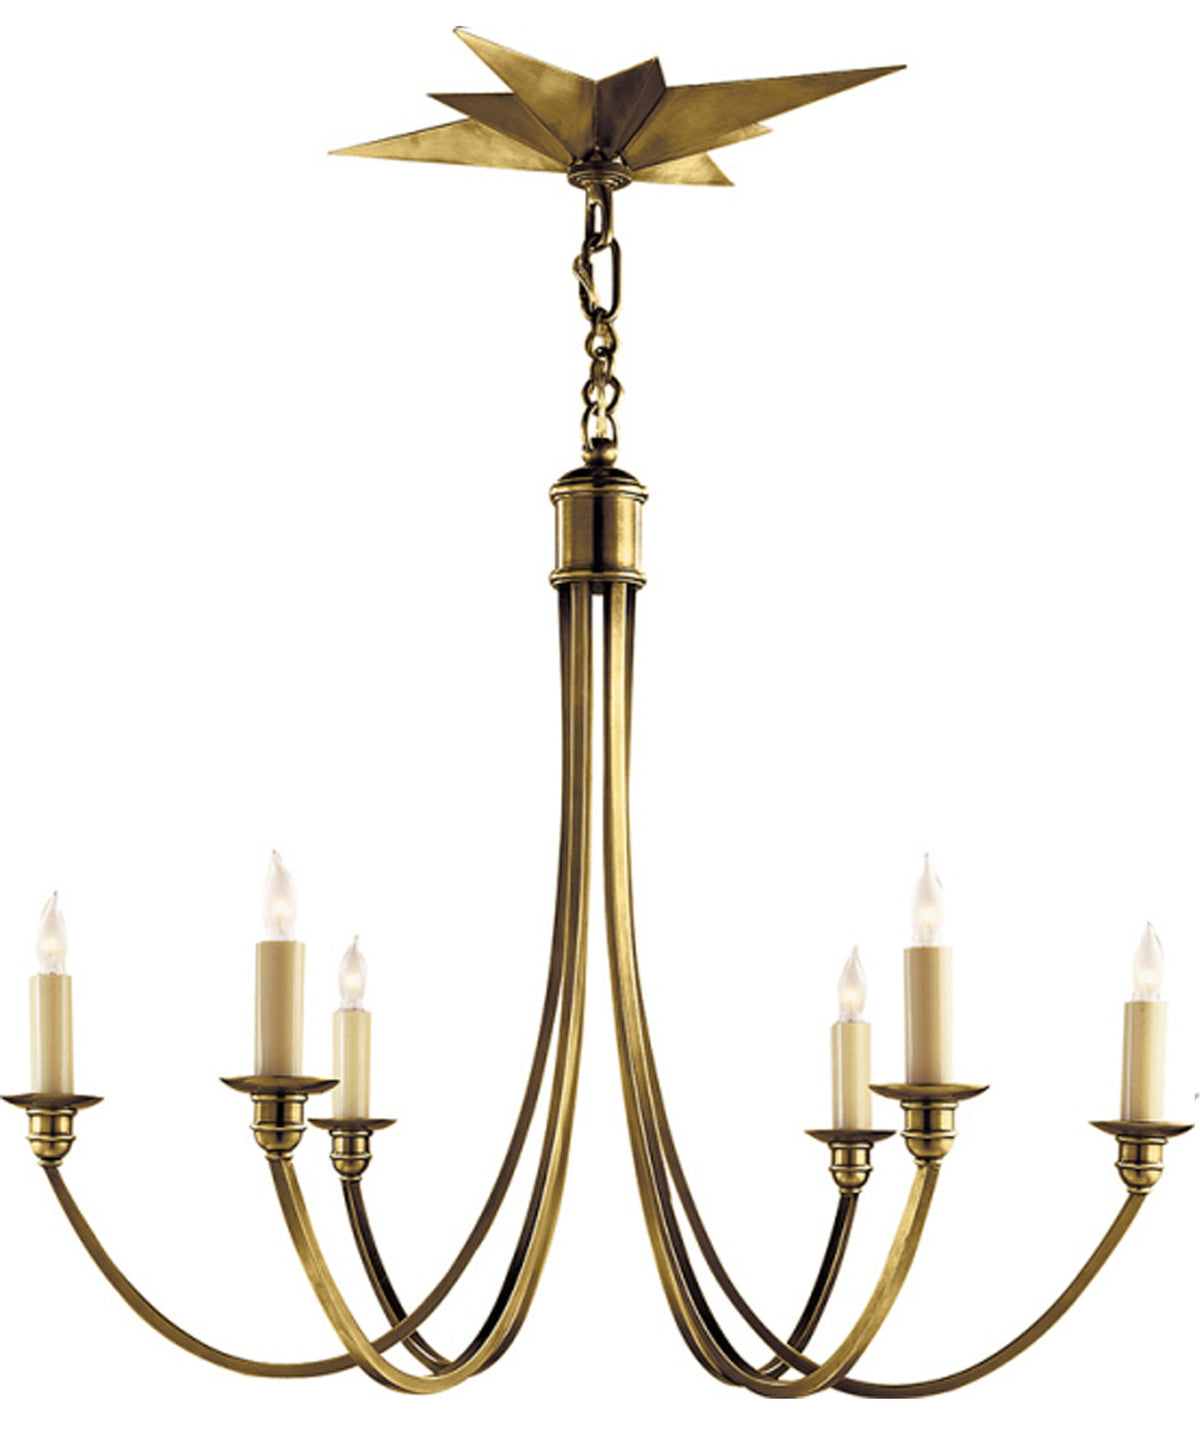 https://www.highstreetmarket.com/cdn/shop/products/VC-Venetian-medium-chandelier-brass3_1200x1440.jpg?v=1571262578